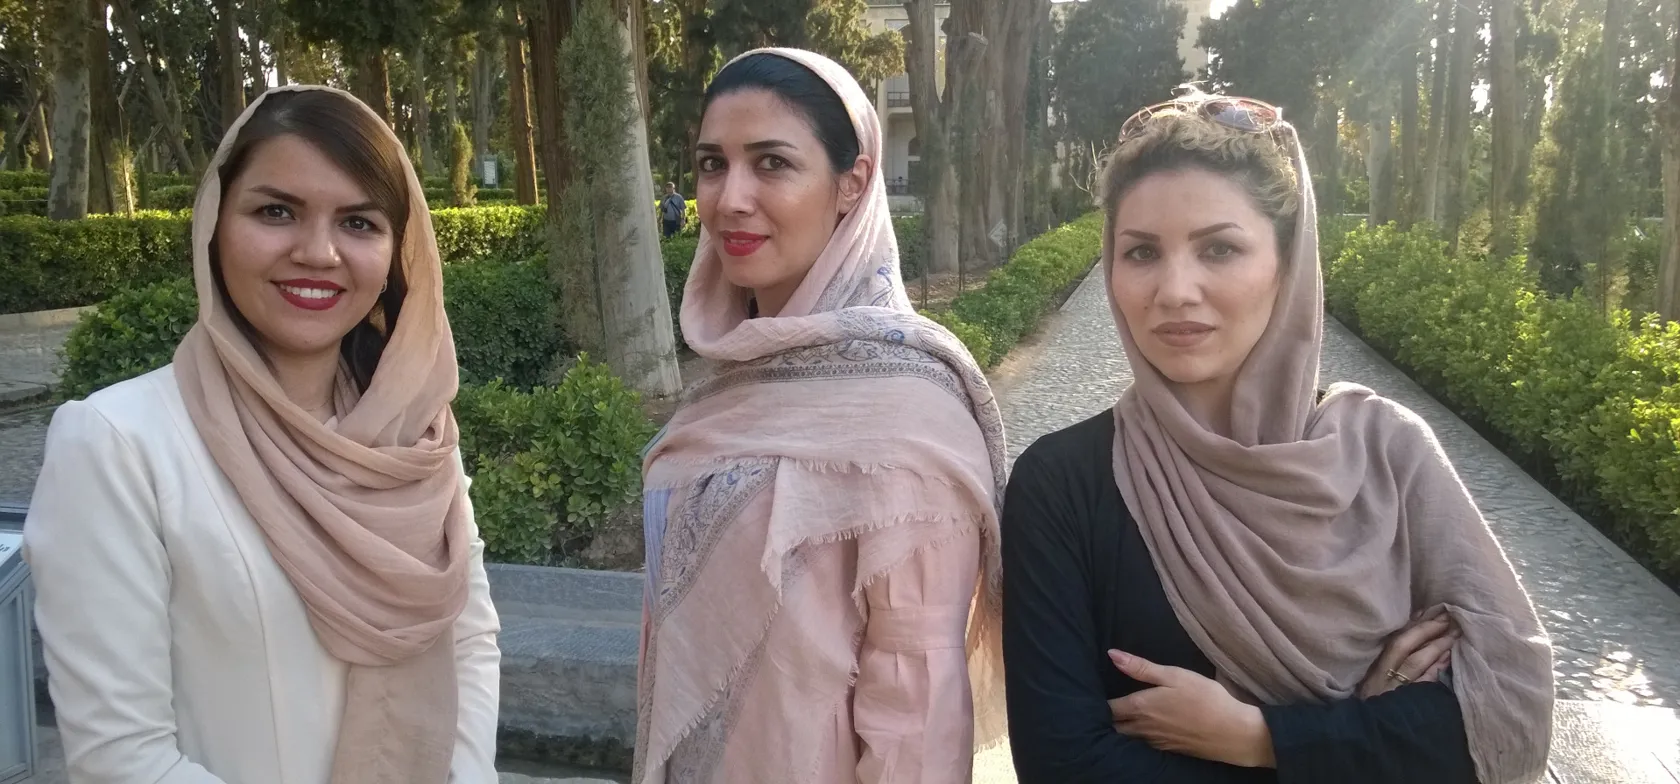 Iranske kvinder har mange elegante måder at sætte tørklædet på. Foto Jens-Arne Sørensen